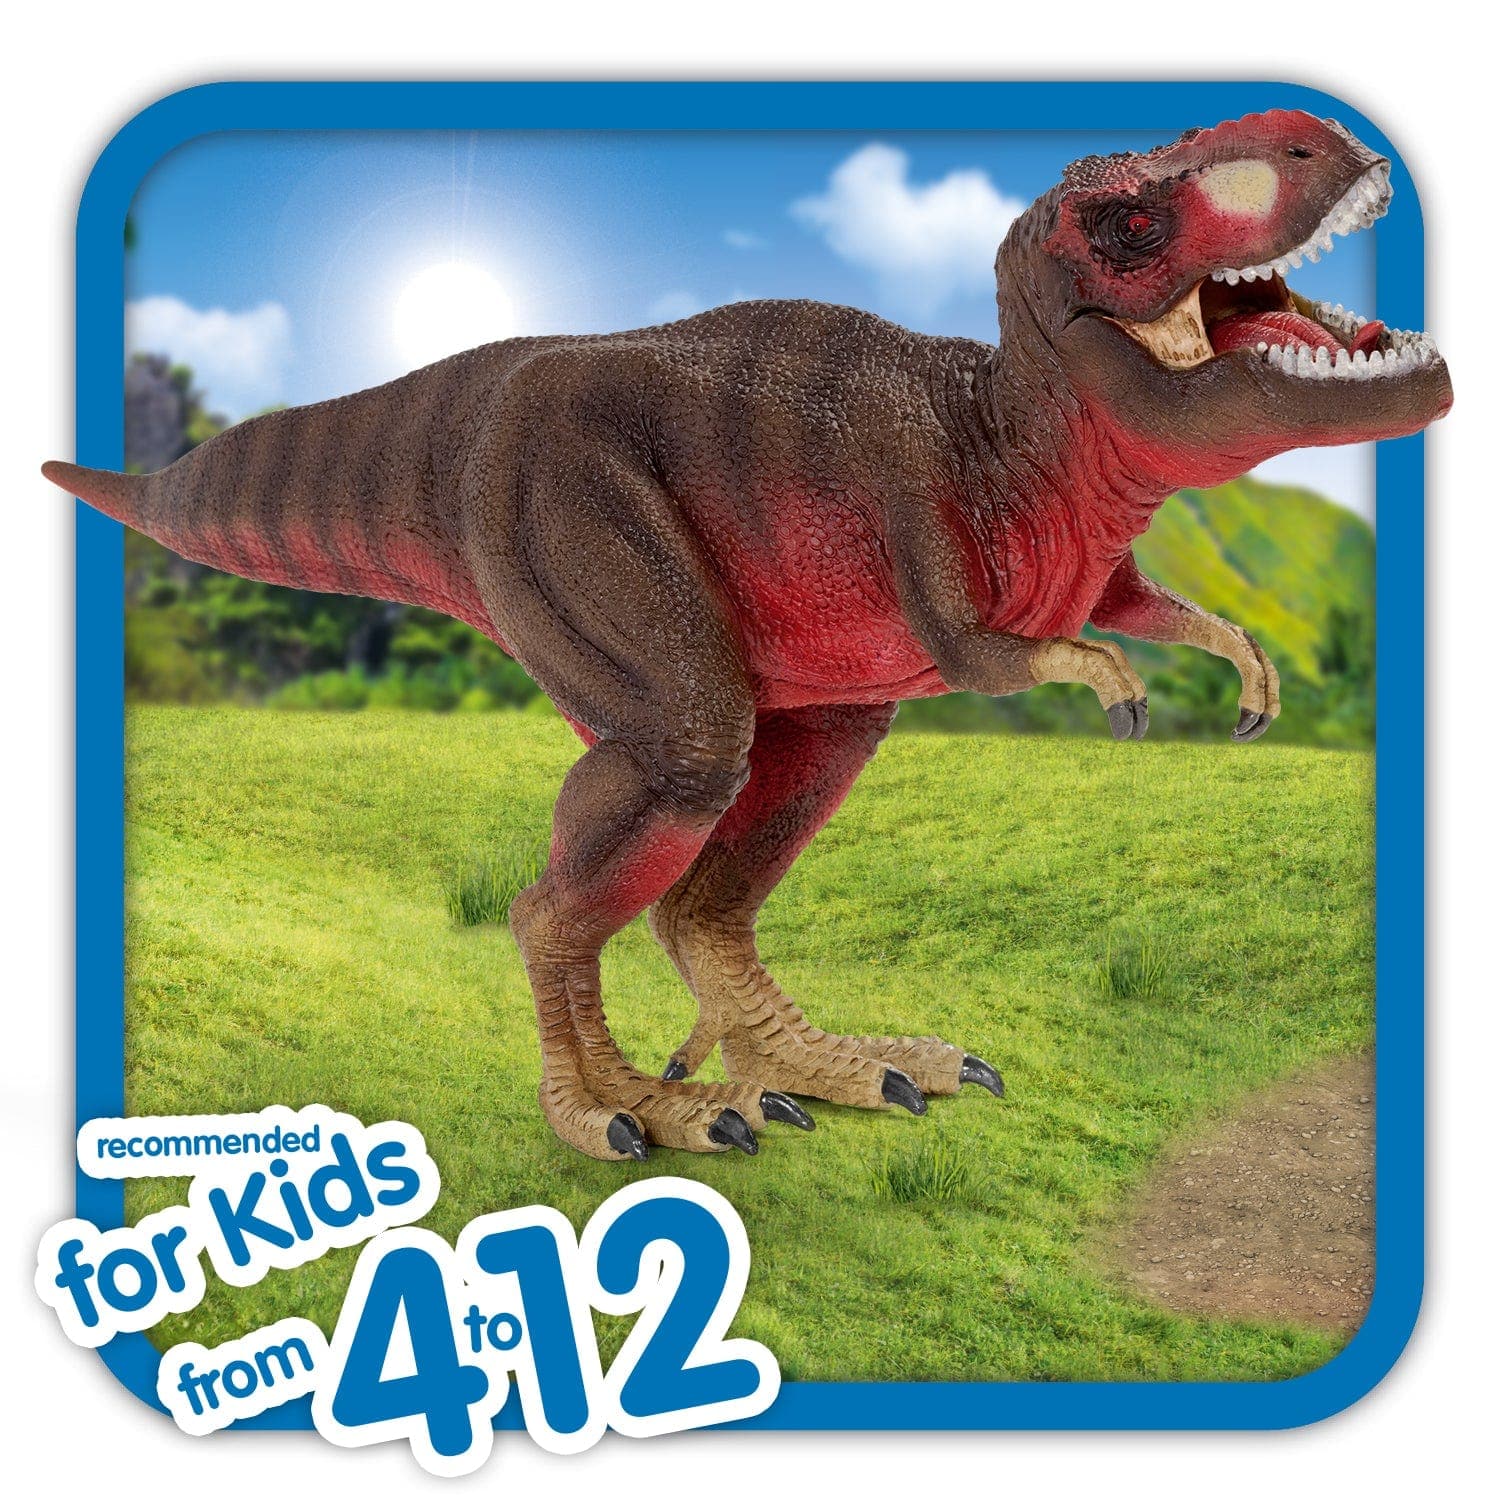 Schleich-Tyrannosaurus Rex, Red-72068-Legacy Toys